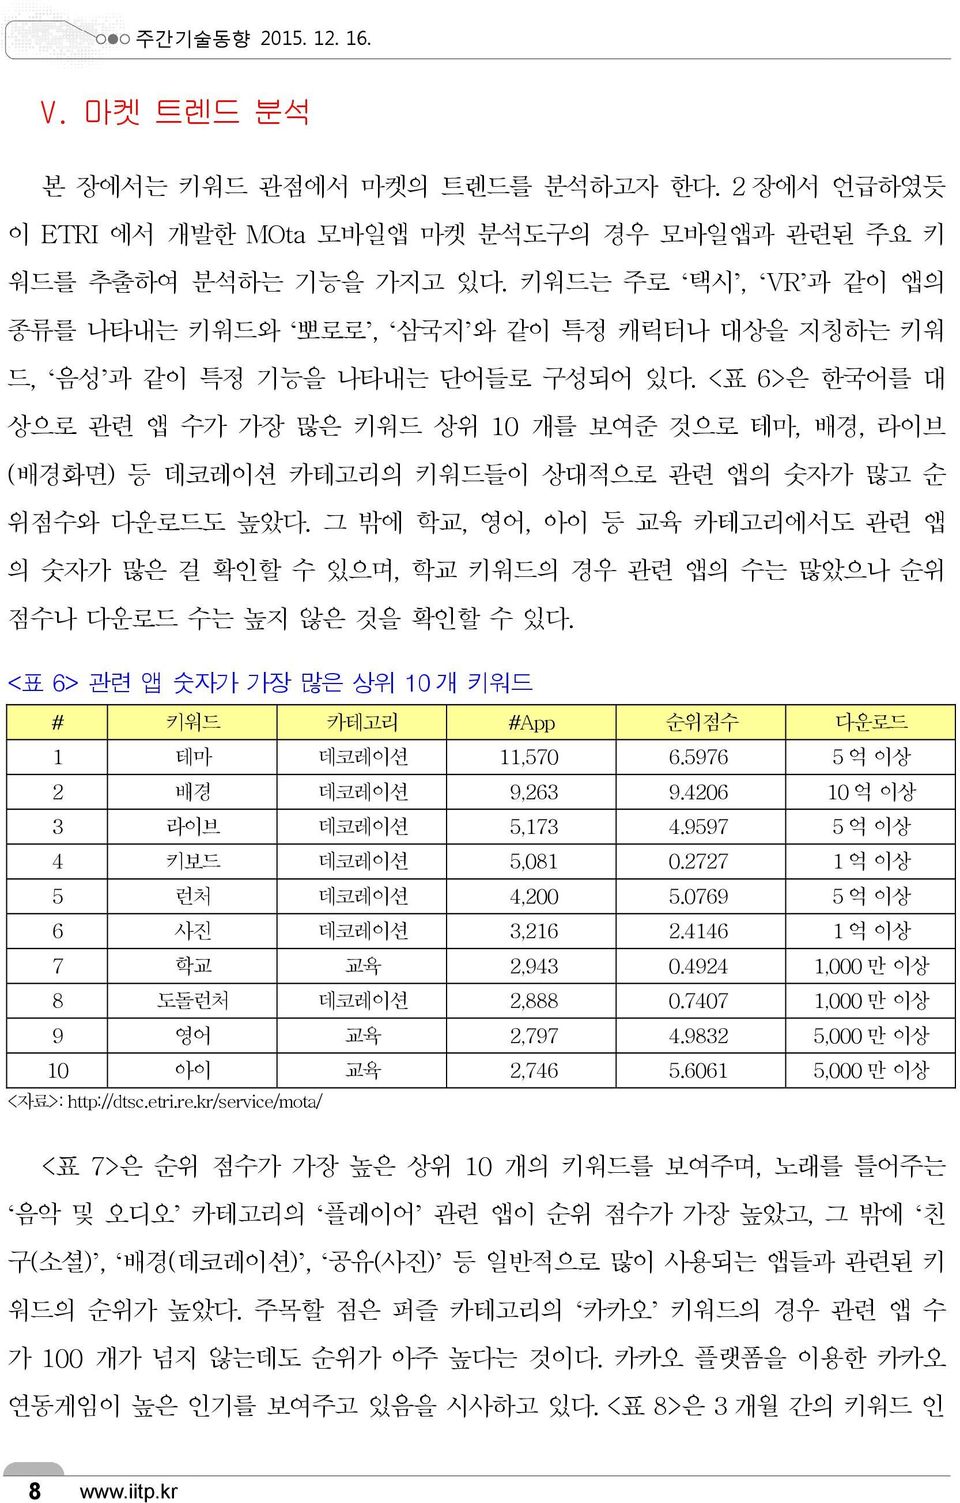 <표 6>은 한국어를 대 상으로 관련 앱 수가 가장 많은 키워드 상위 10 개를 보여준 것으로 테마, 배경, 라이브 (배경화면) 등 데코레이션 카테고리의 키워드들이 상대적으로 관련 앱의 숫자가 많고 순 위점수와 다운로드도 높았다.